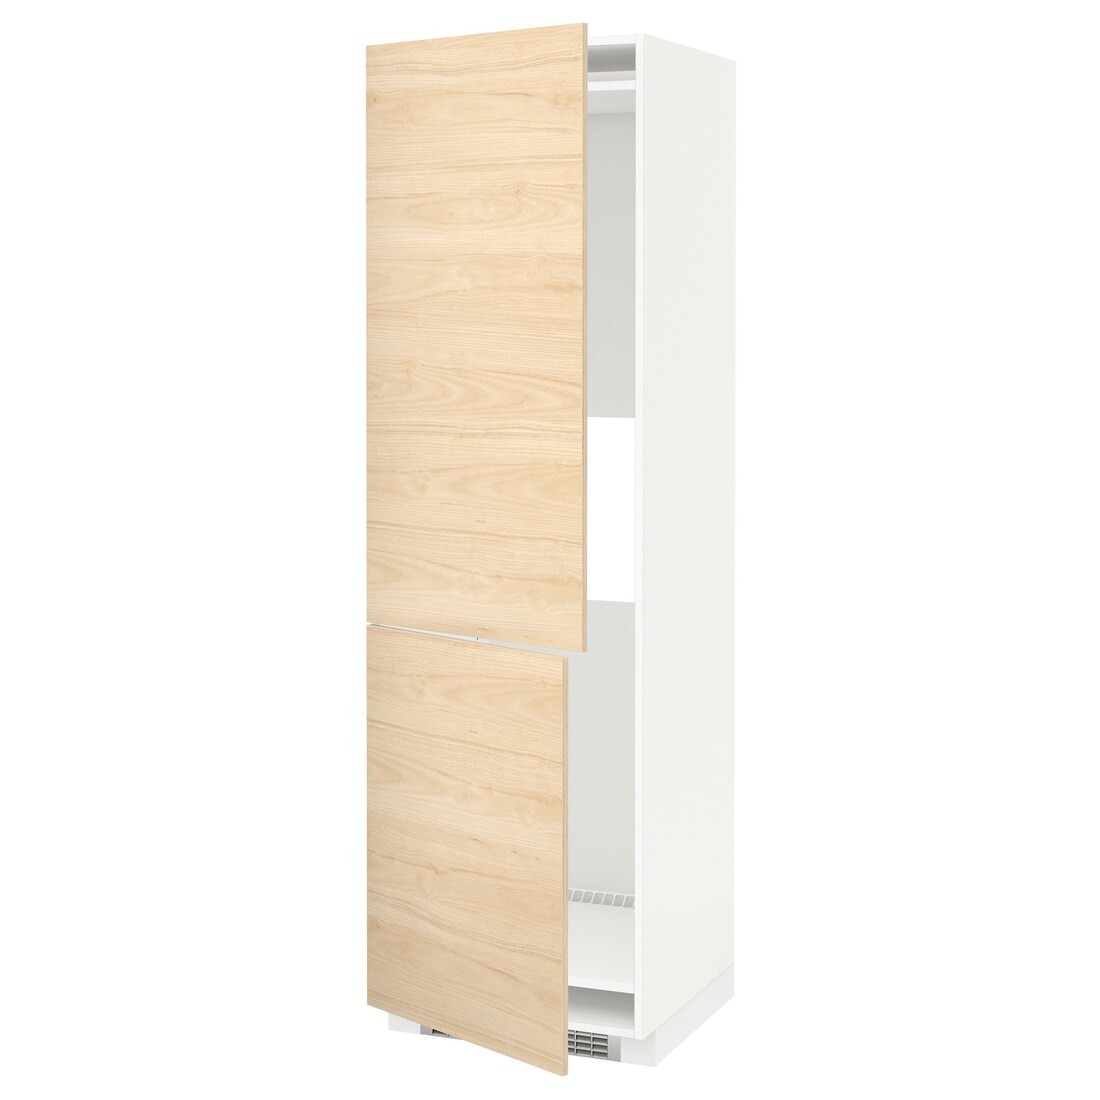 IKEA METOD МЕТОД Высокий шкаф для холодильника / морозильника, белый / Askersund узор светлый ясень, 60x60x200 см 99204809 992.048.09